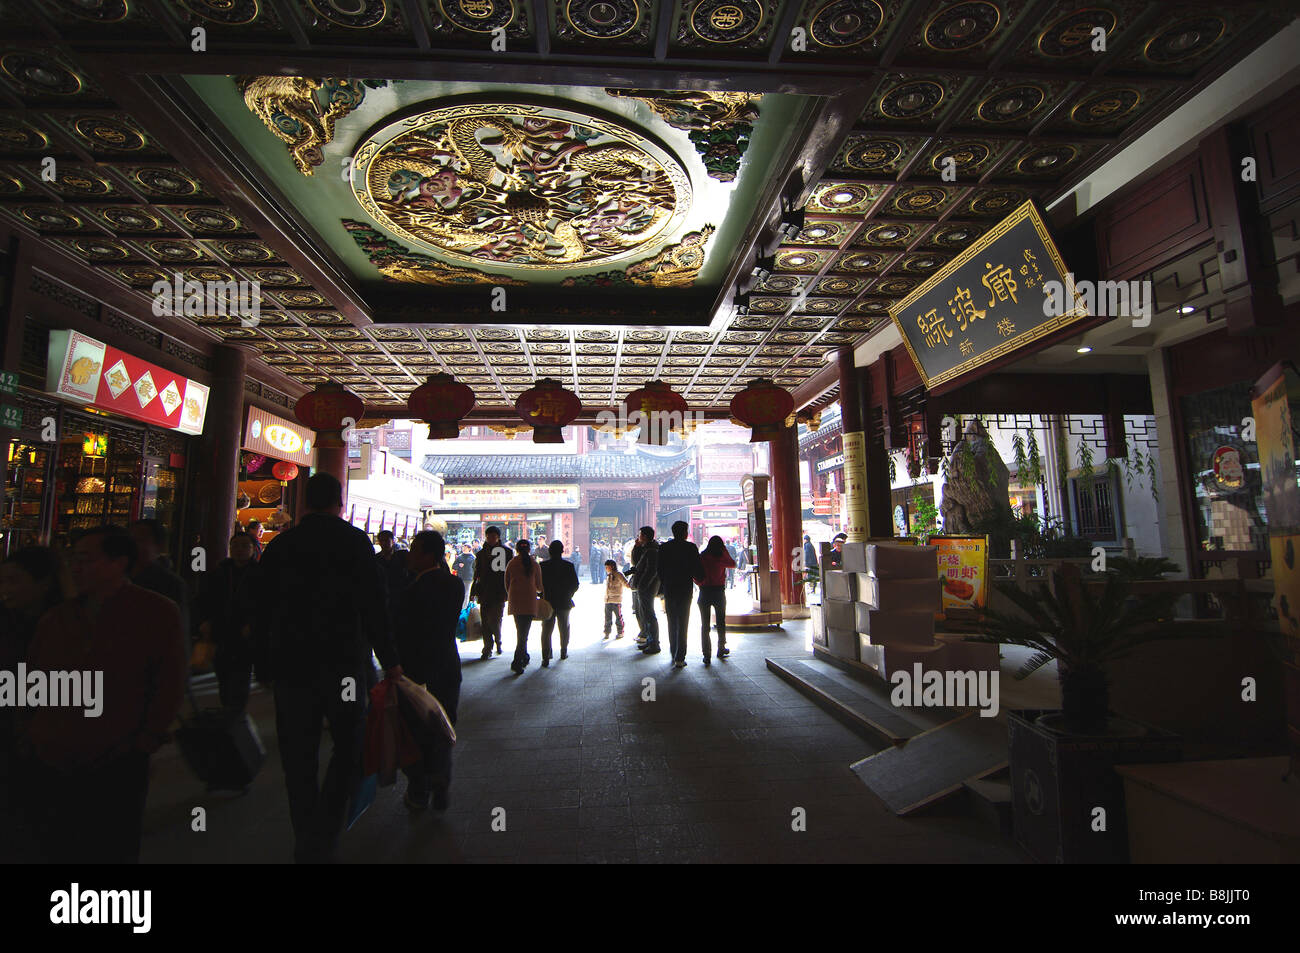 Kundenansturm auf den Märkten des alten Shanghai, China um einkaufen zu gehen. Eine touristische Attraktion in ganz Asien, Reisen Menschen darauf. Stockfoto